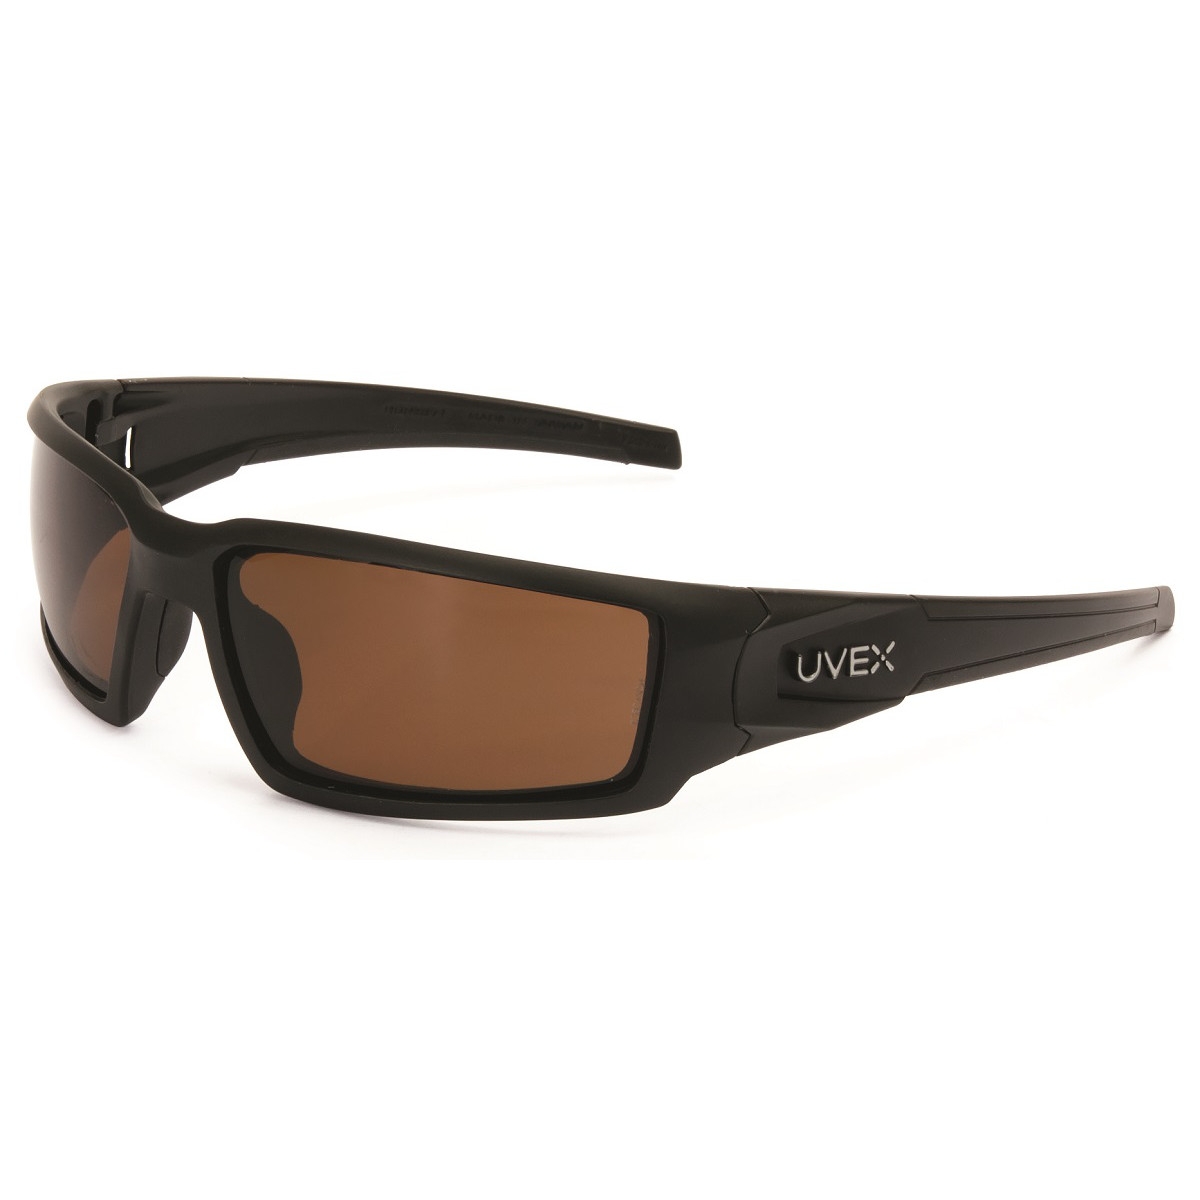 Uvex S2949 Hypershock Safety Glasses - Matte Black Frame